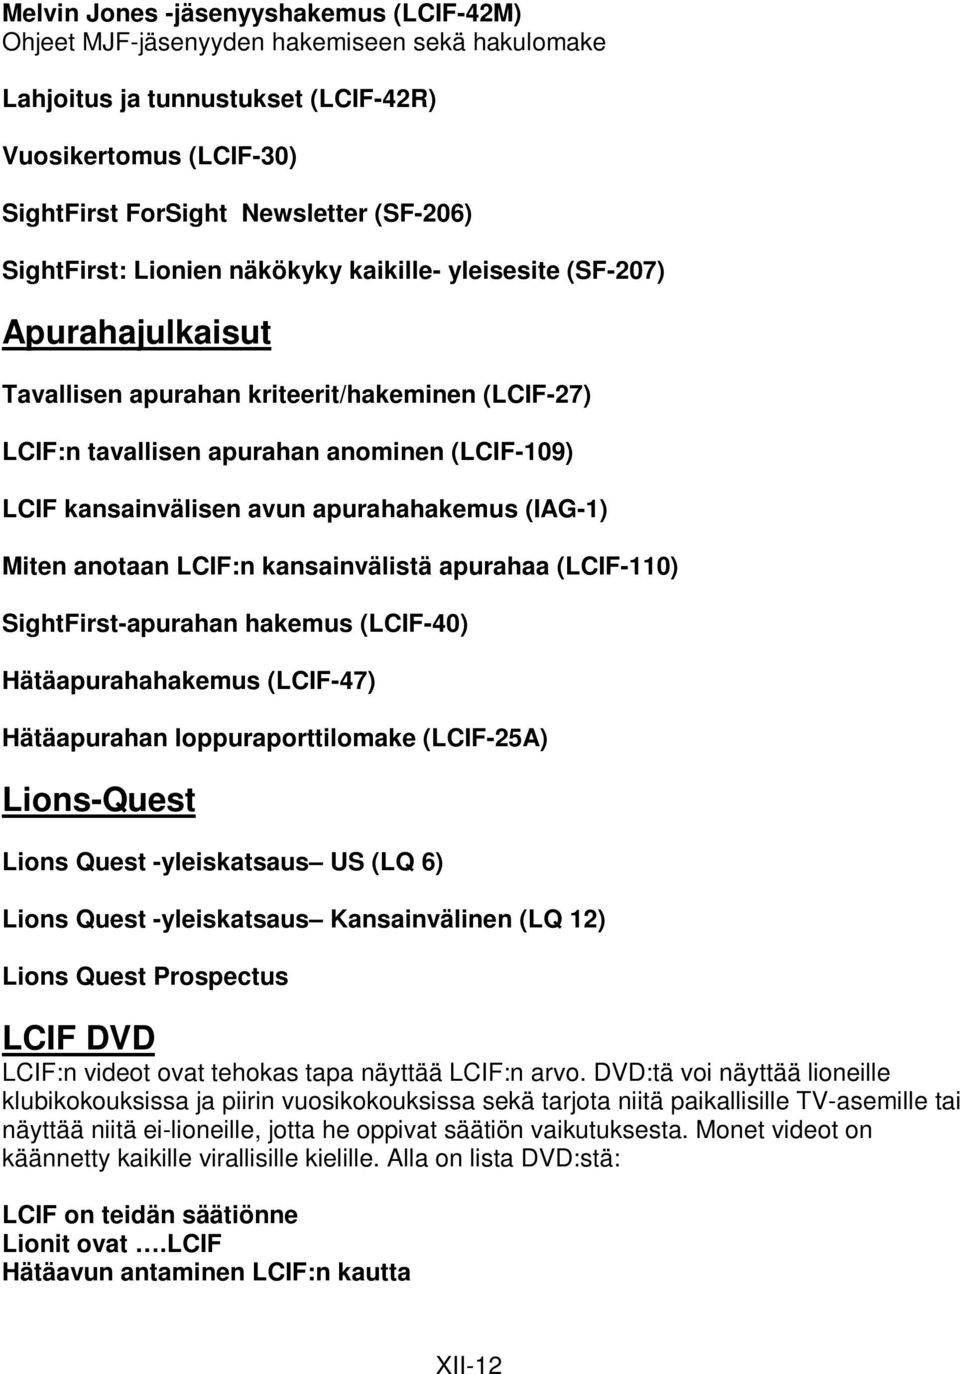 apurahahakemus (IAG-1) Miten anotaan LCIF:n kansainvälistä apurahaa (LCIF-110) SightFirst-apurahan hakemus (LCIF-40) Hätäapurahahakemus (LCIF-47) Hätäapurahan loppuraporttilomake (LCIF-25A)